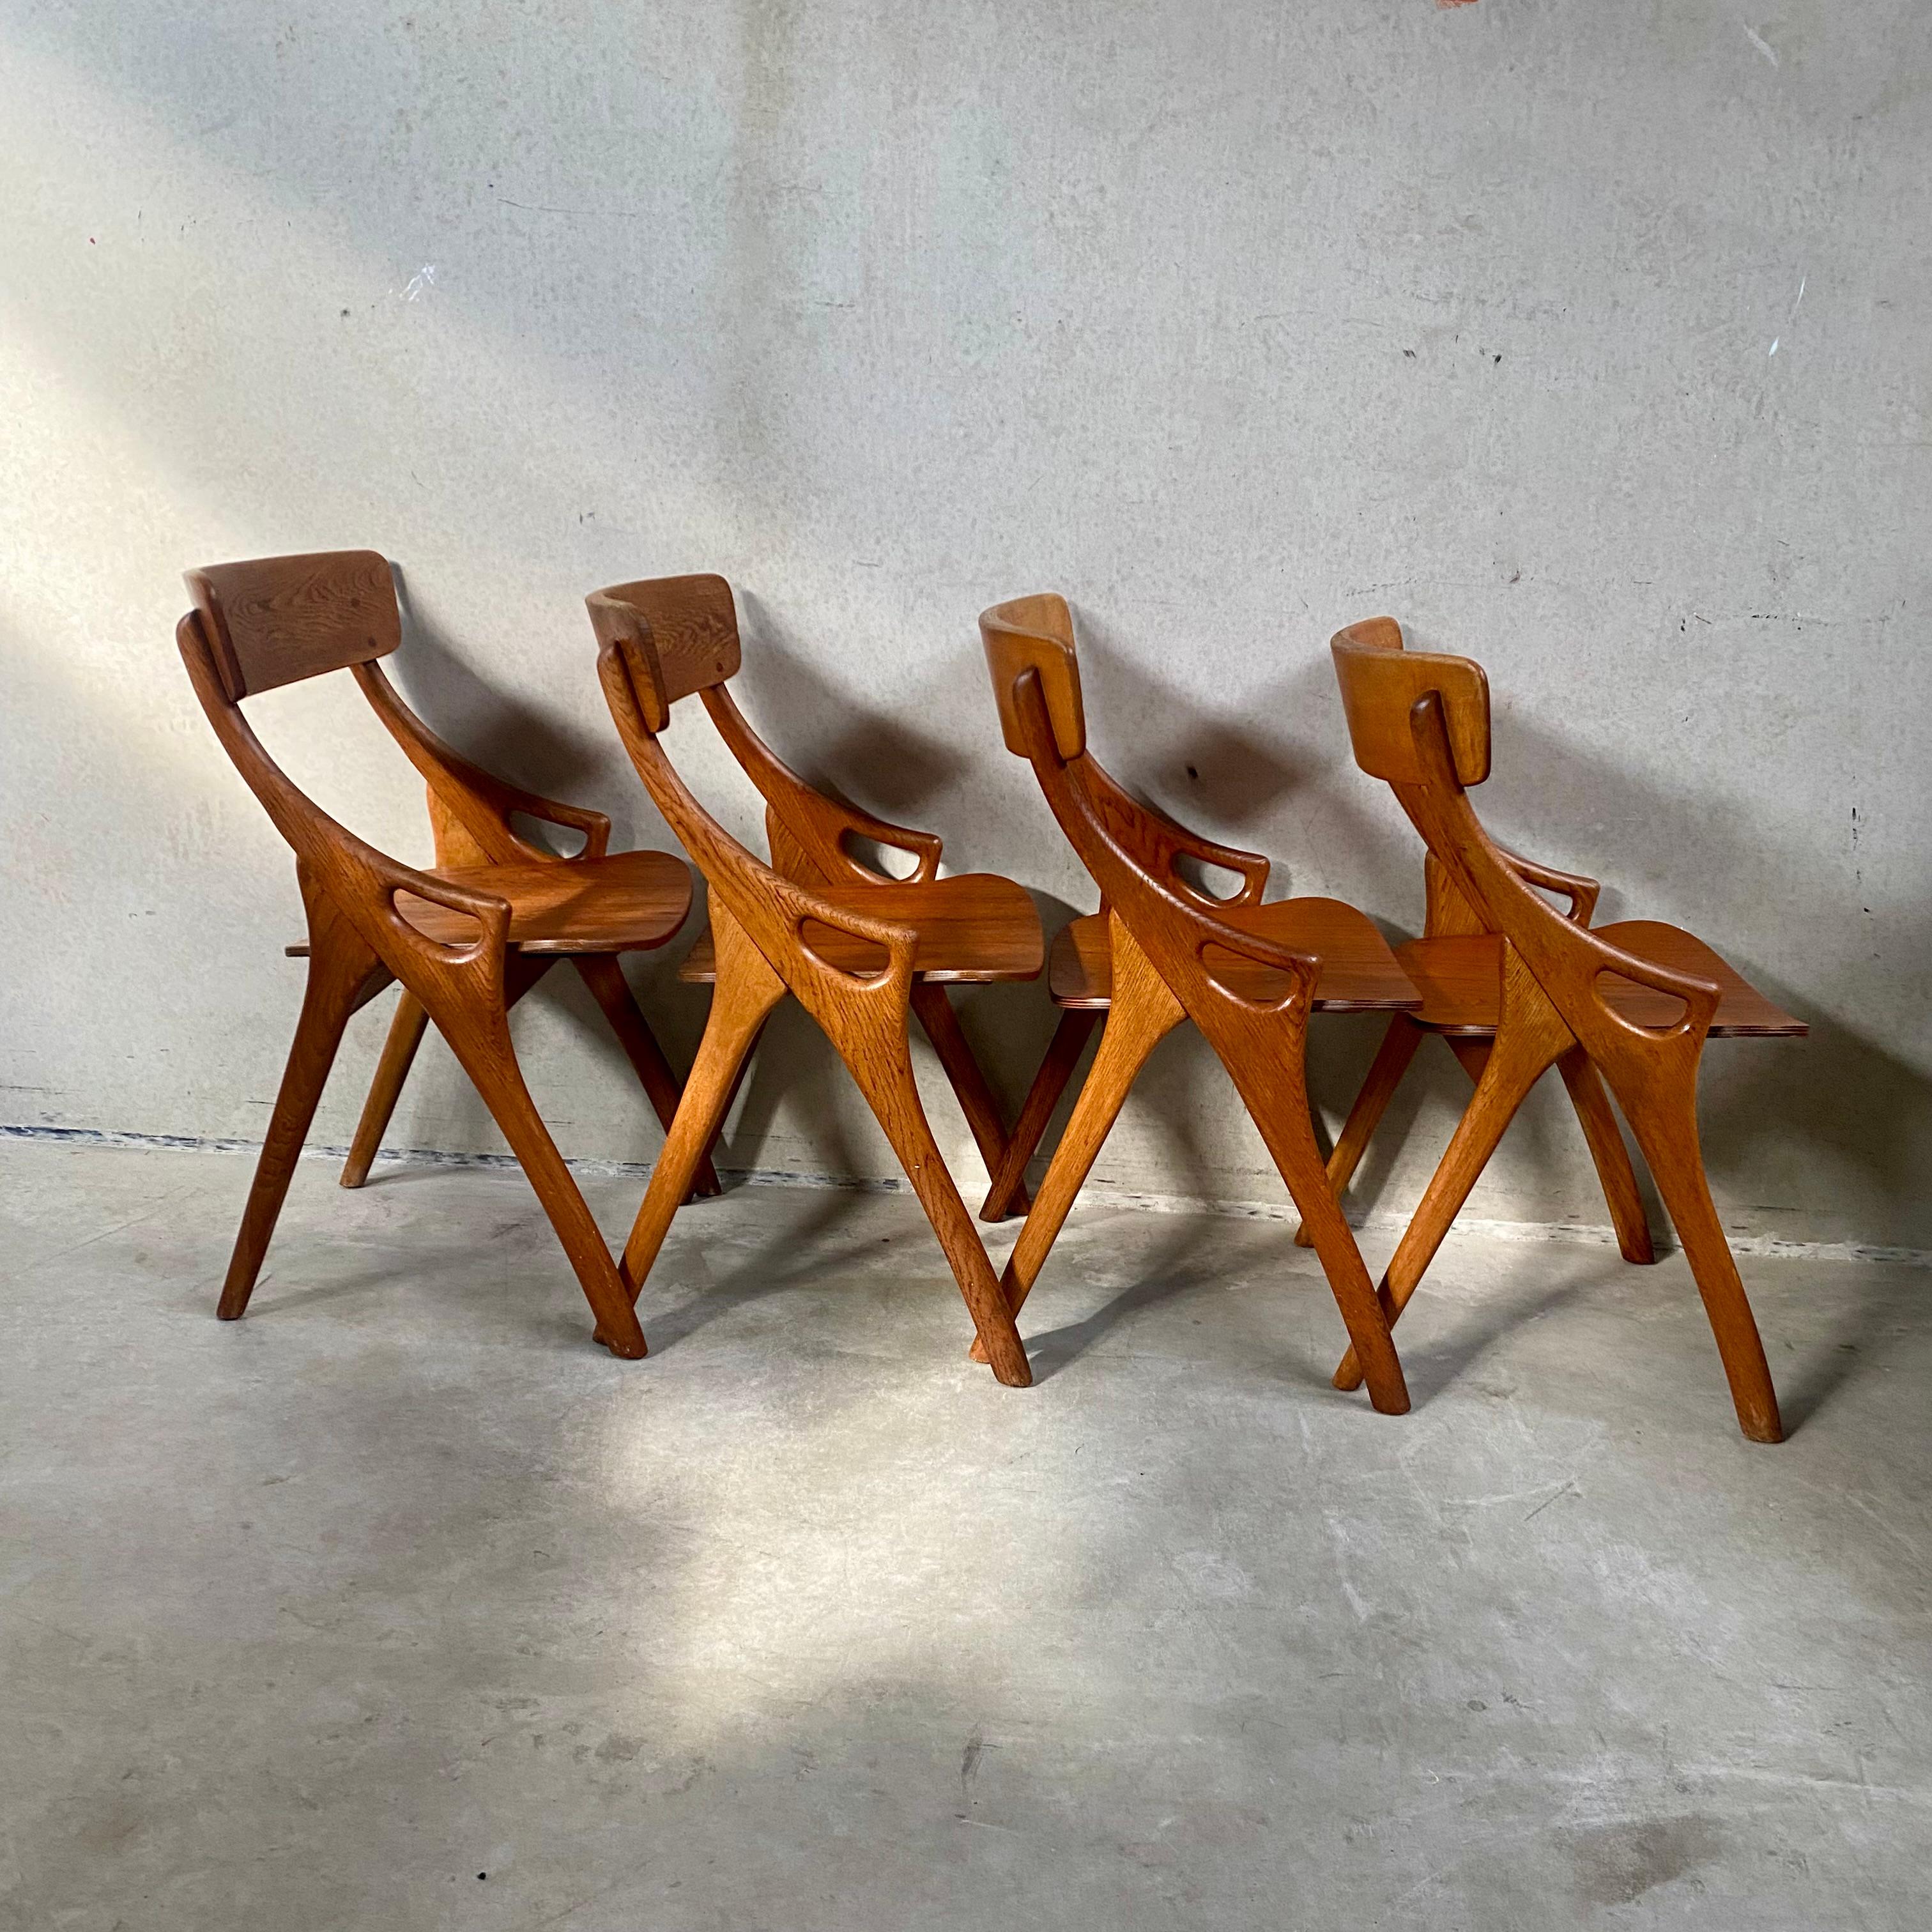 4 Rustic Oak Arne Hovmand Olsen Dining Chairs for Mogens Kold Mobelfabrik 1950 For Sale 8